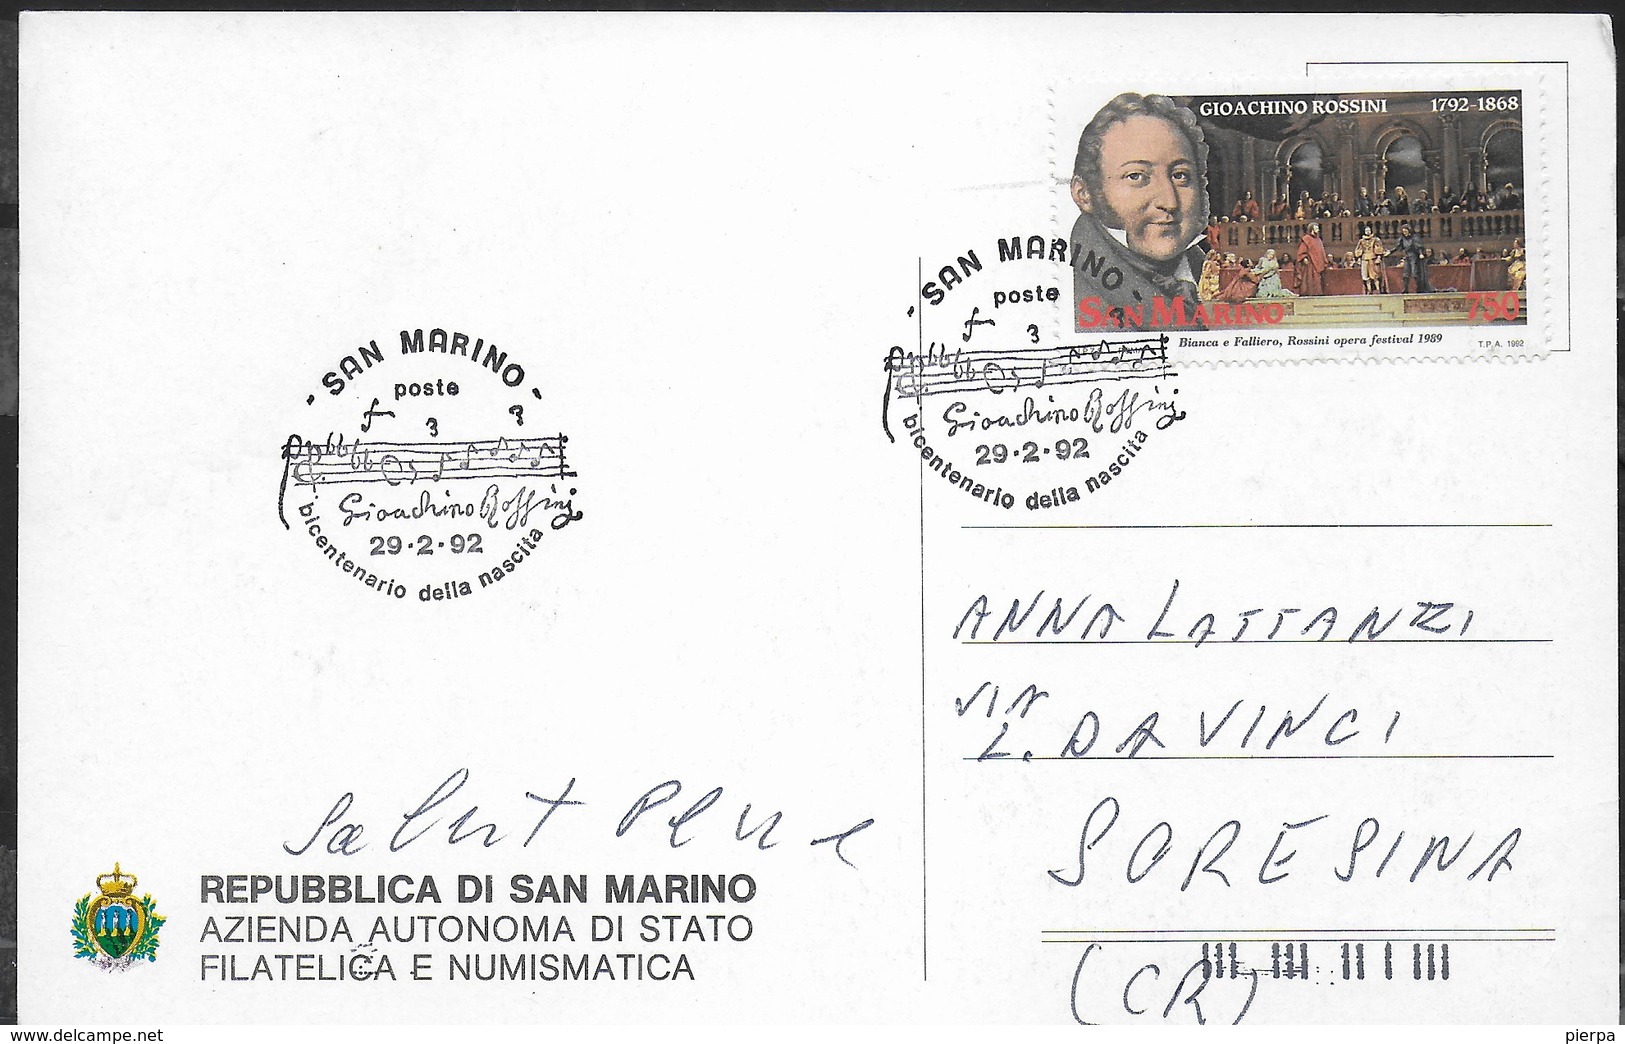 G. ROSSINI - BICENTENARIO NASCITA - ANNULLO SPECIALE SAN MARINO 29.02.1992 SU CARTOLINA - FRANCOBOLLO ROSSINI - Musica